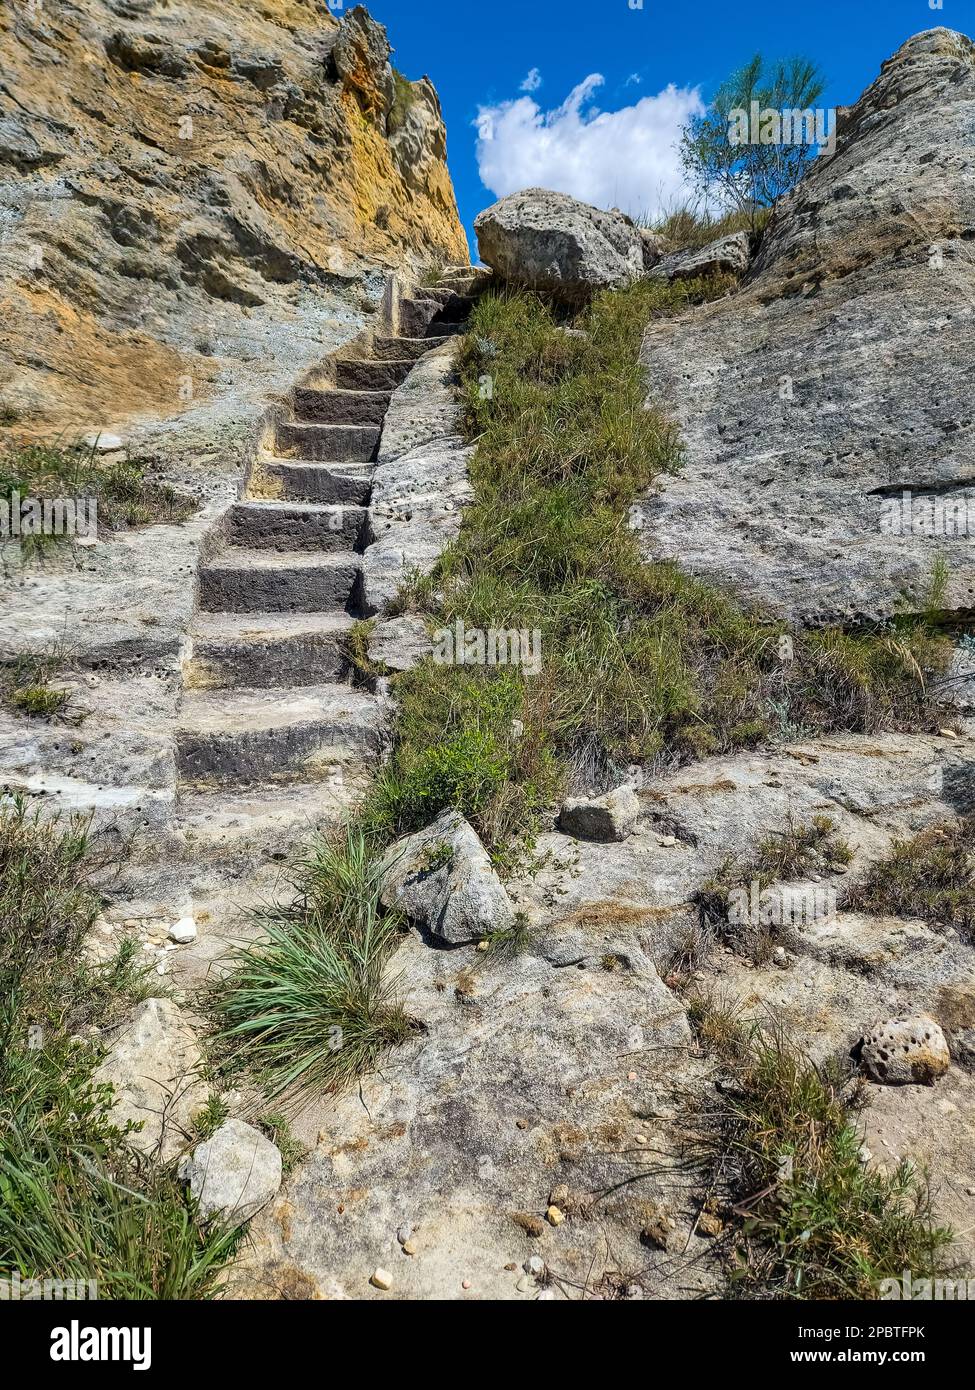 Steintreppen auf Touristenpfaden. Isalo-Nationalpark in der Region Ihorombe. Wildnislandschaft. Wunderschöne Naturlandschaft Madagaskars. Stockfoto